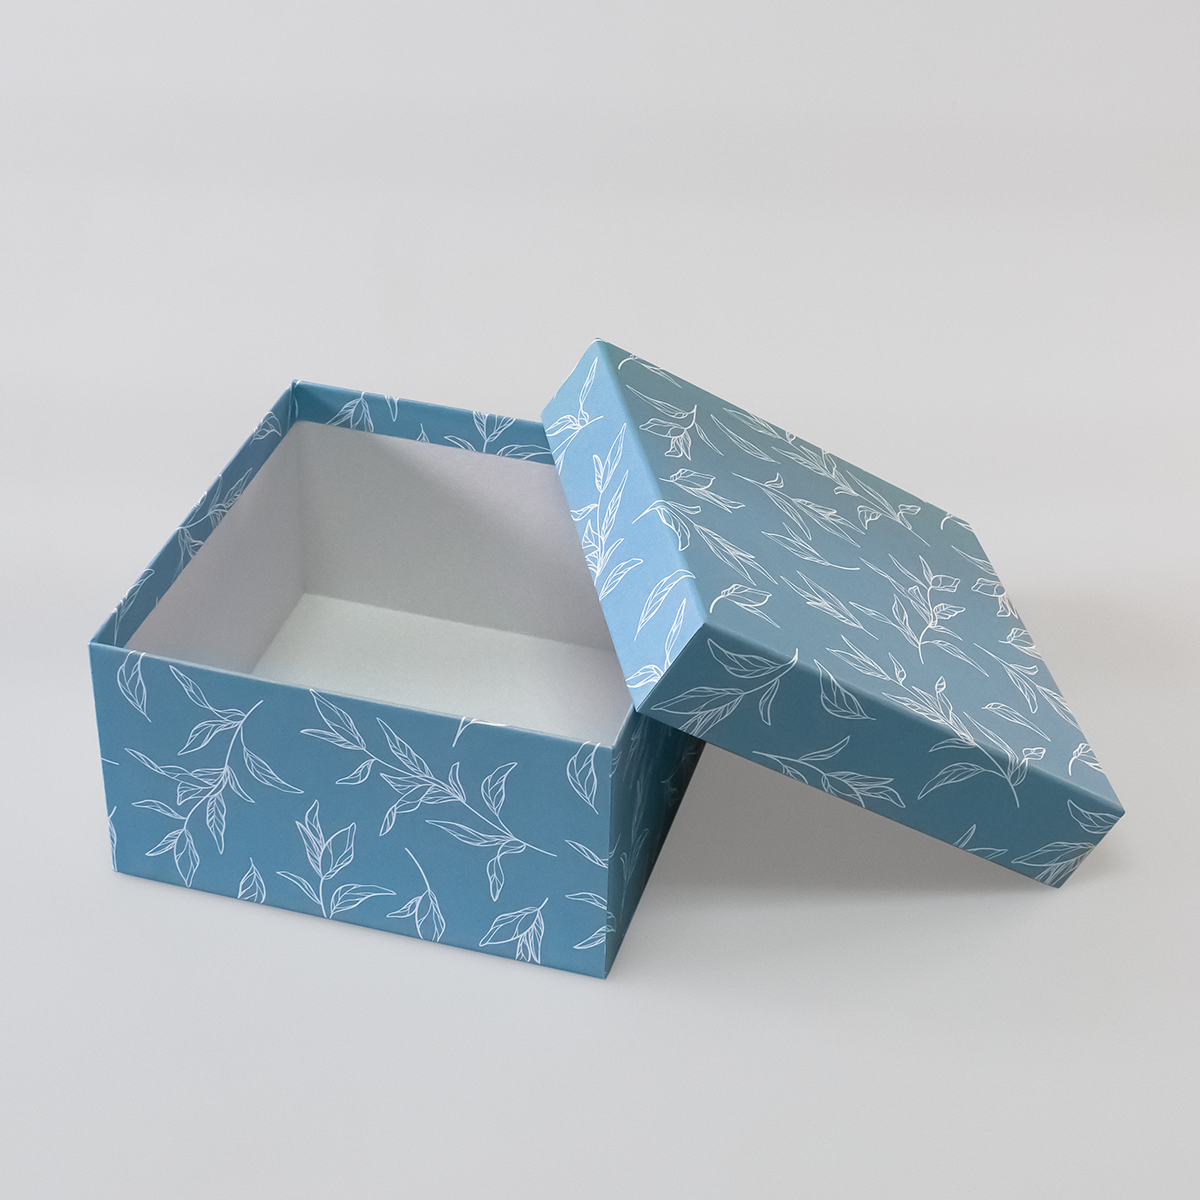 Подарочная коробка крышка-дно, 19 х 19 х 10,5 см. "Листья", белый, голубой